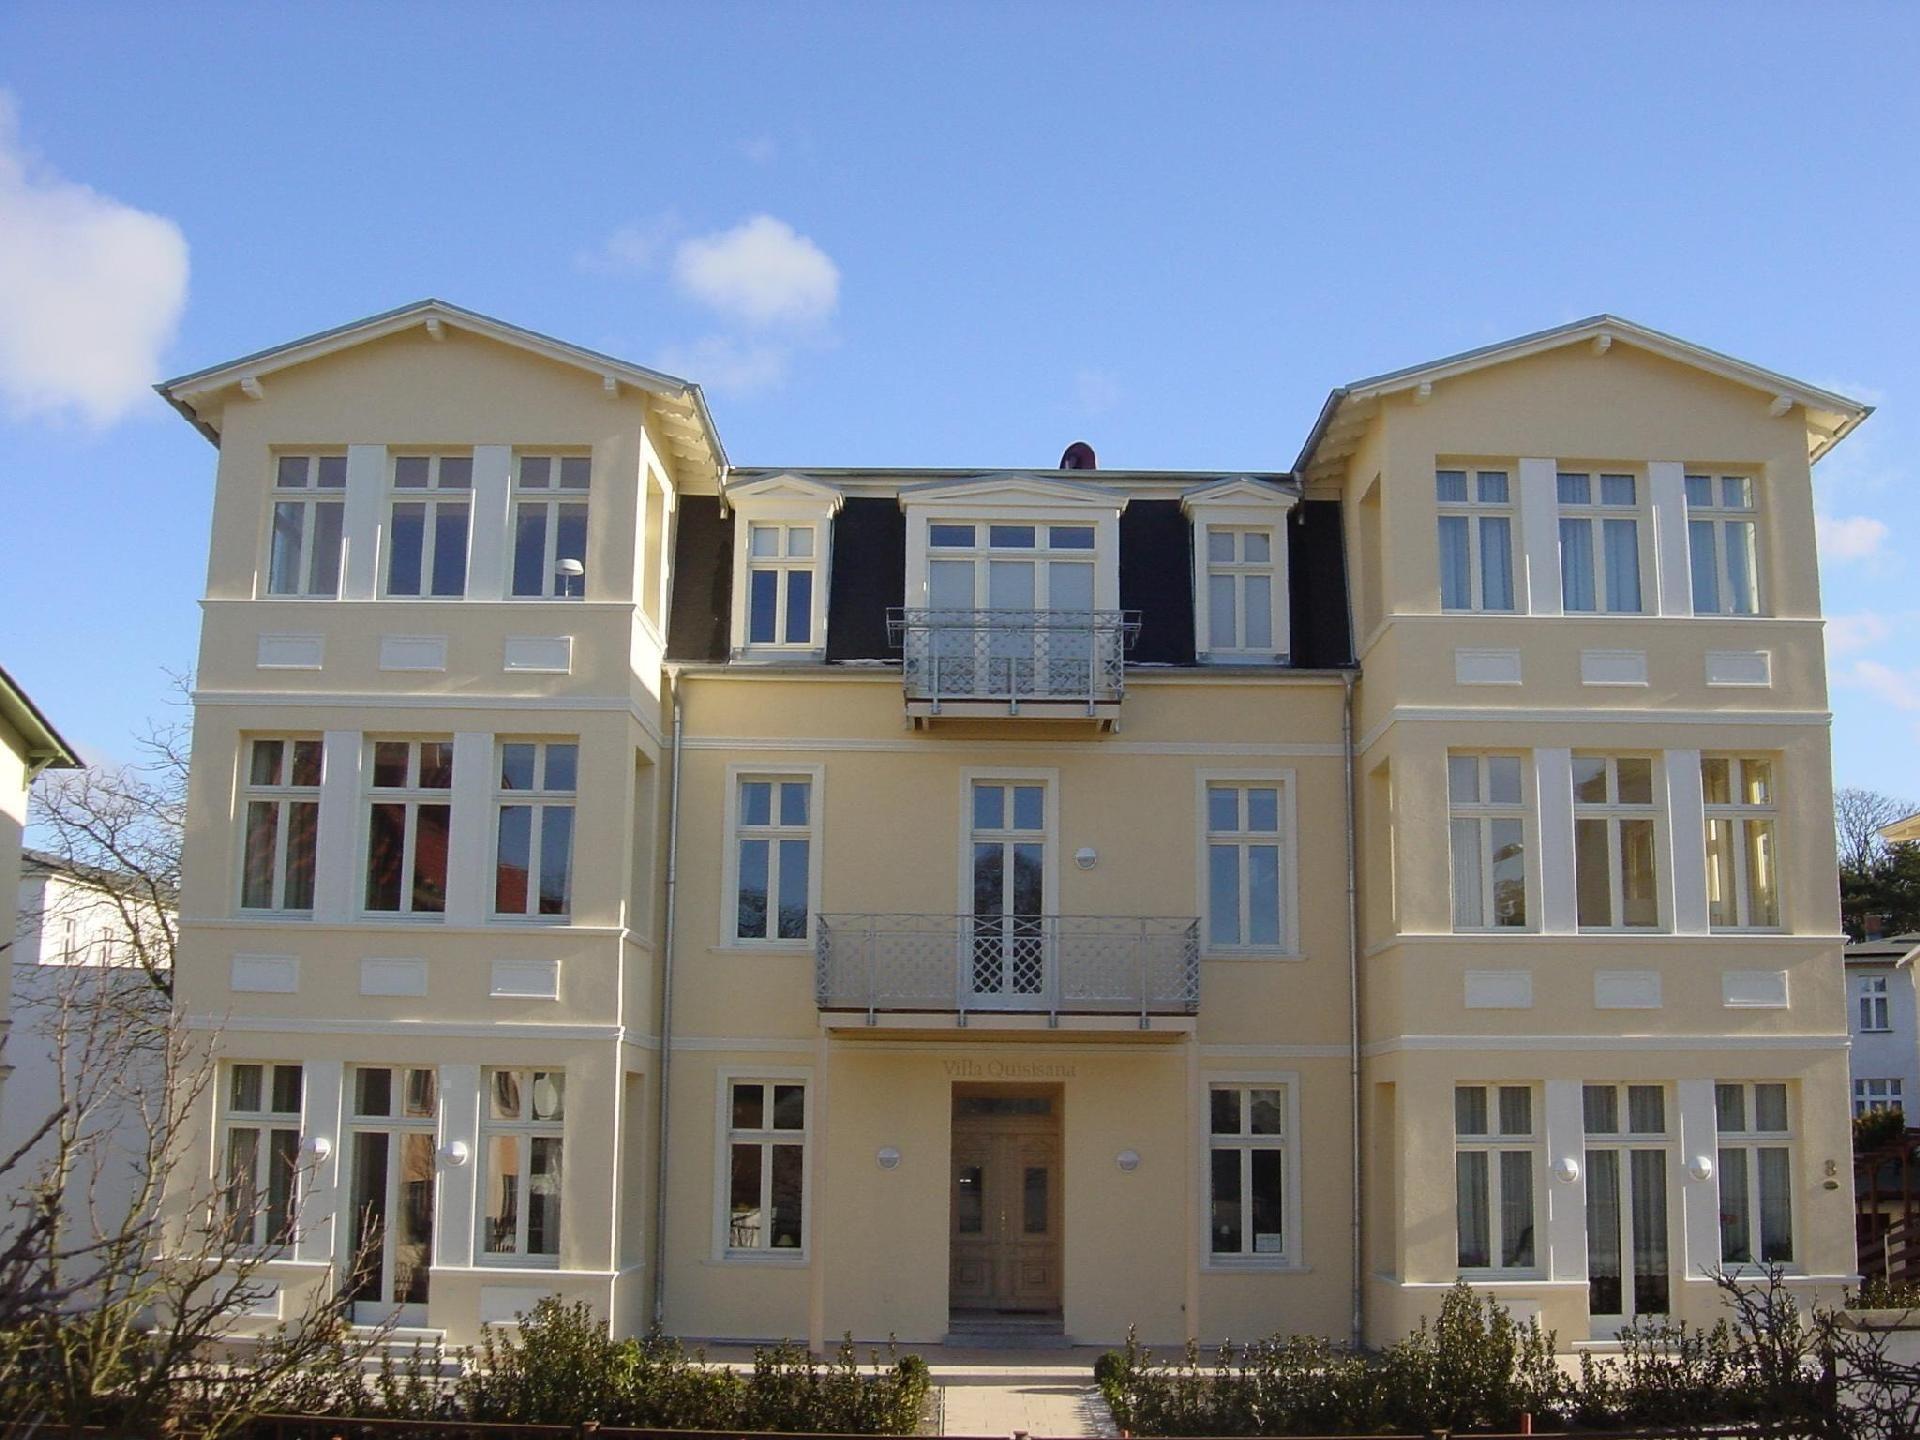 Appartement in Seebad Ahlbeck mit Terrasse Ferienwohnung auf Usedom